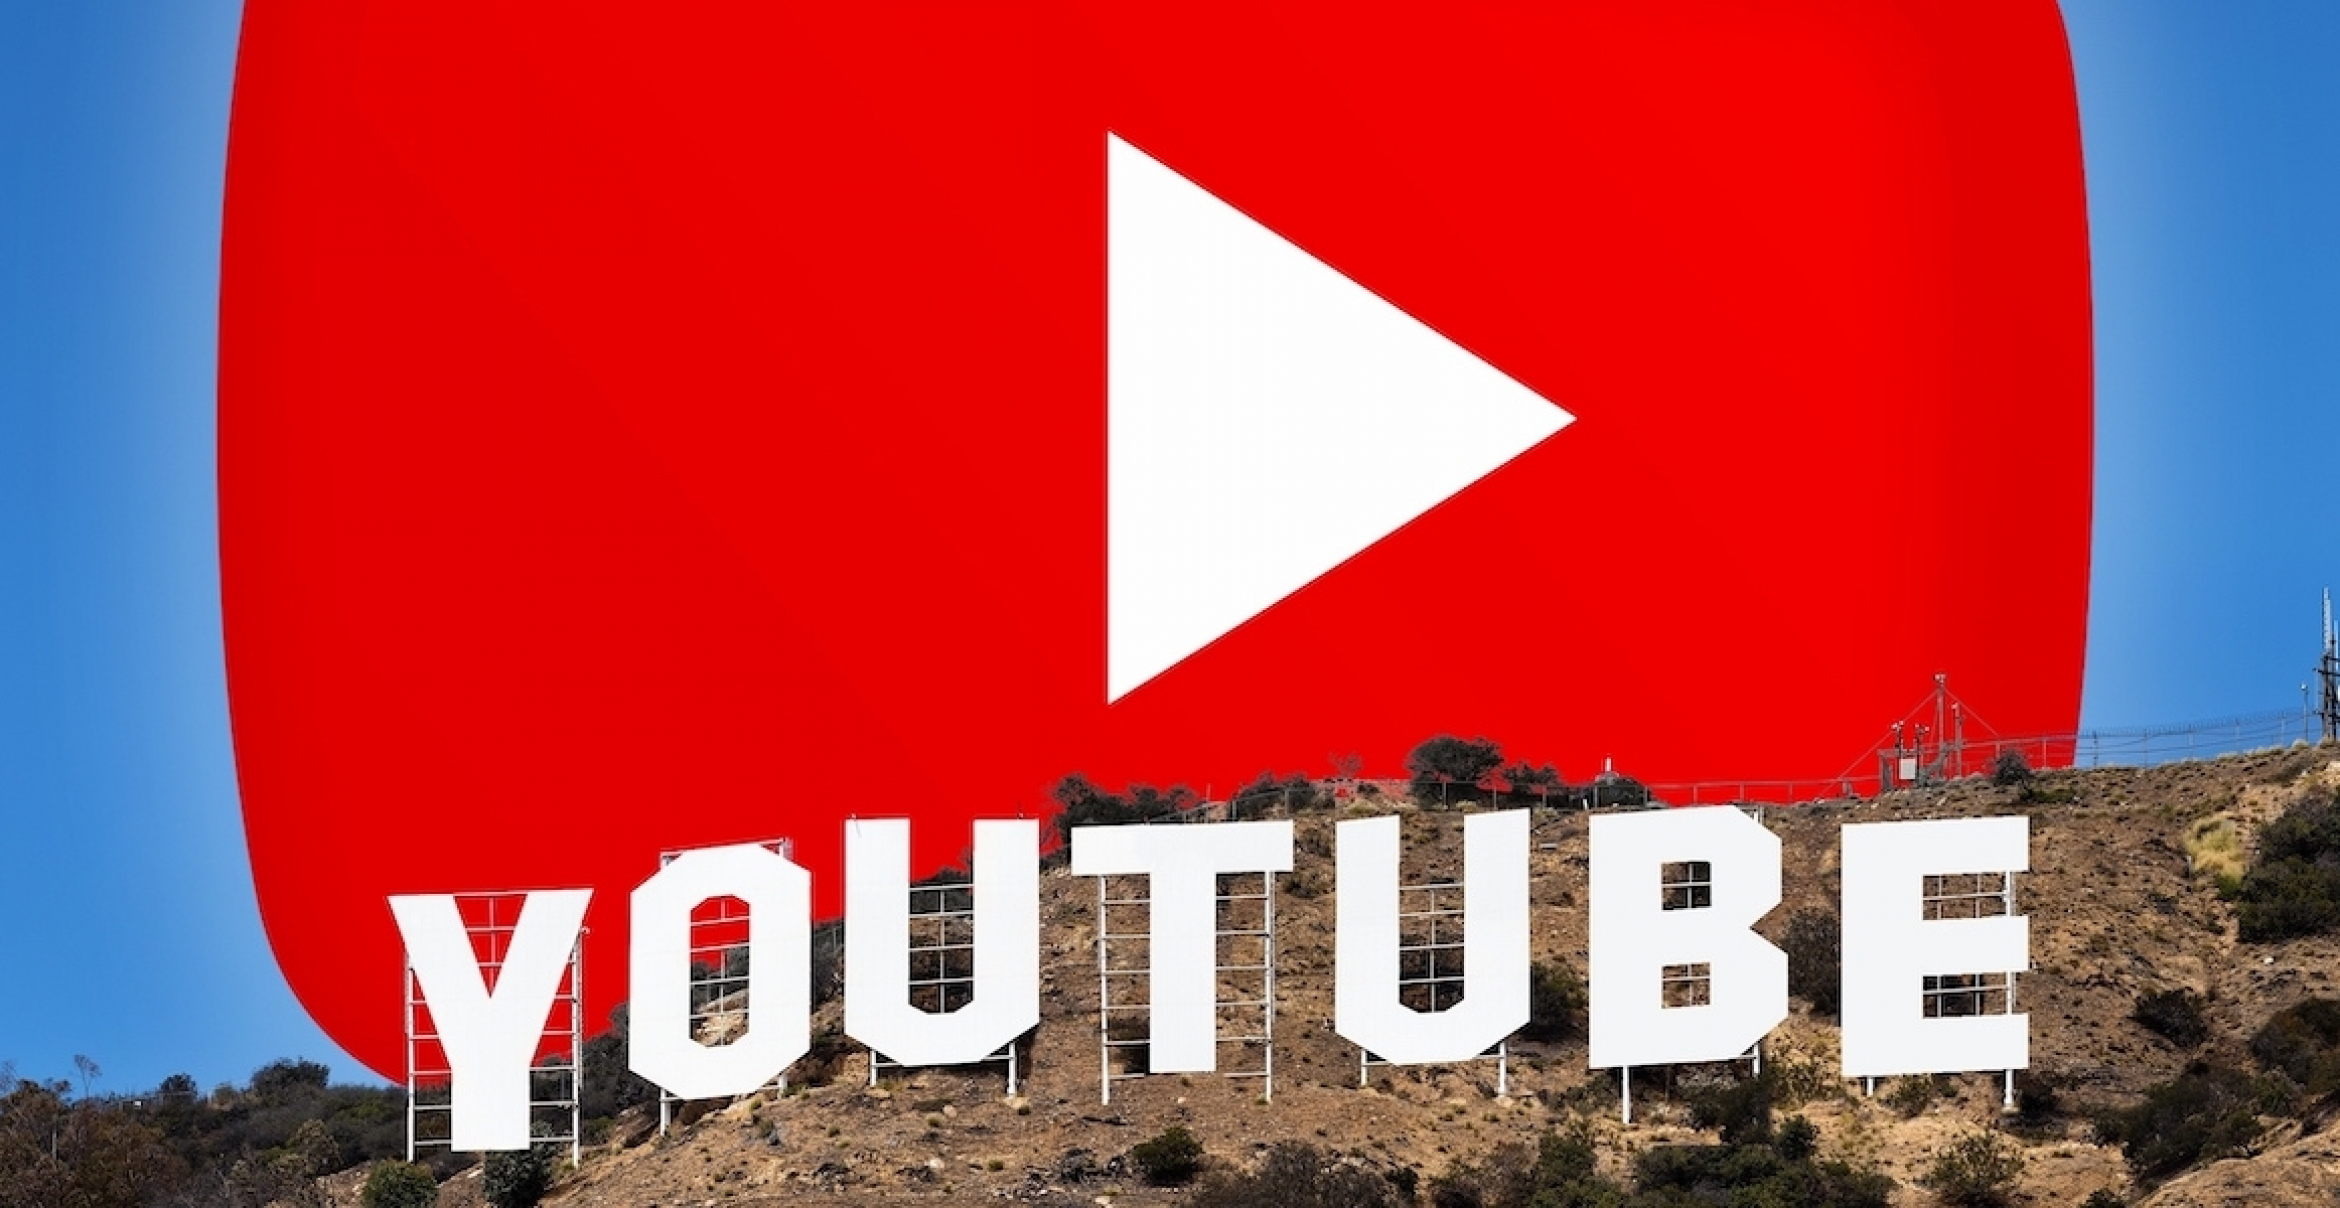 Verkehrte Welt: Hollywoodstars entdecken Youtube für sich